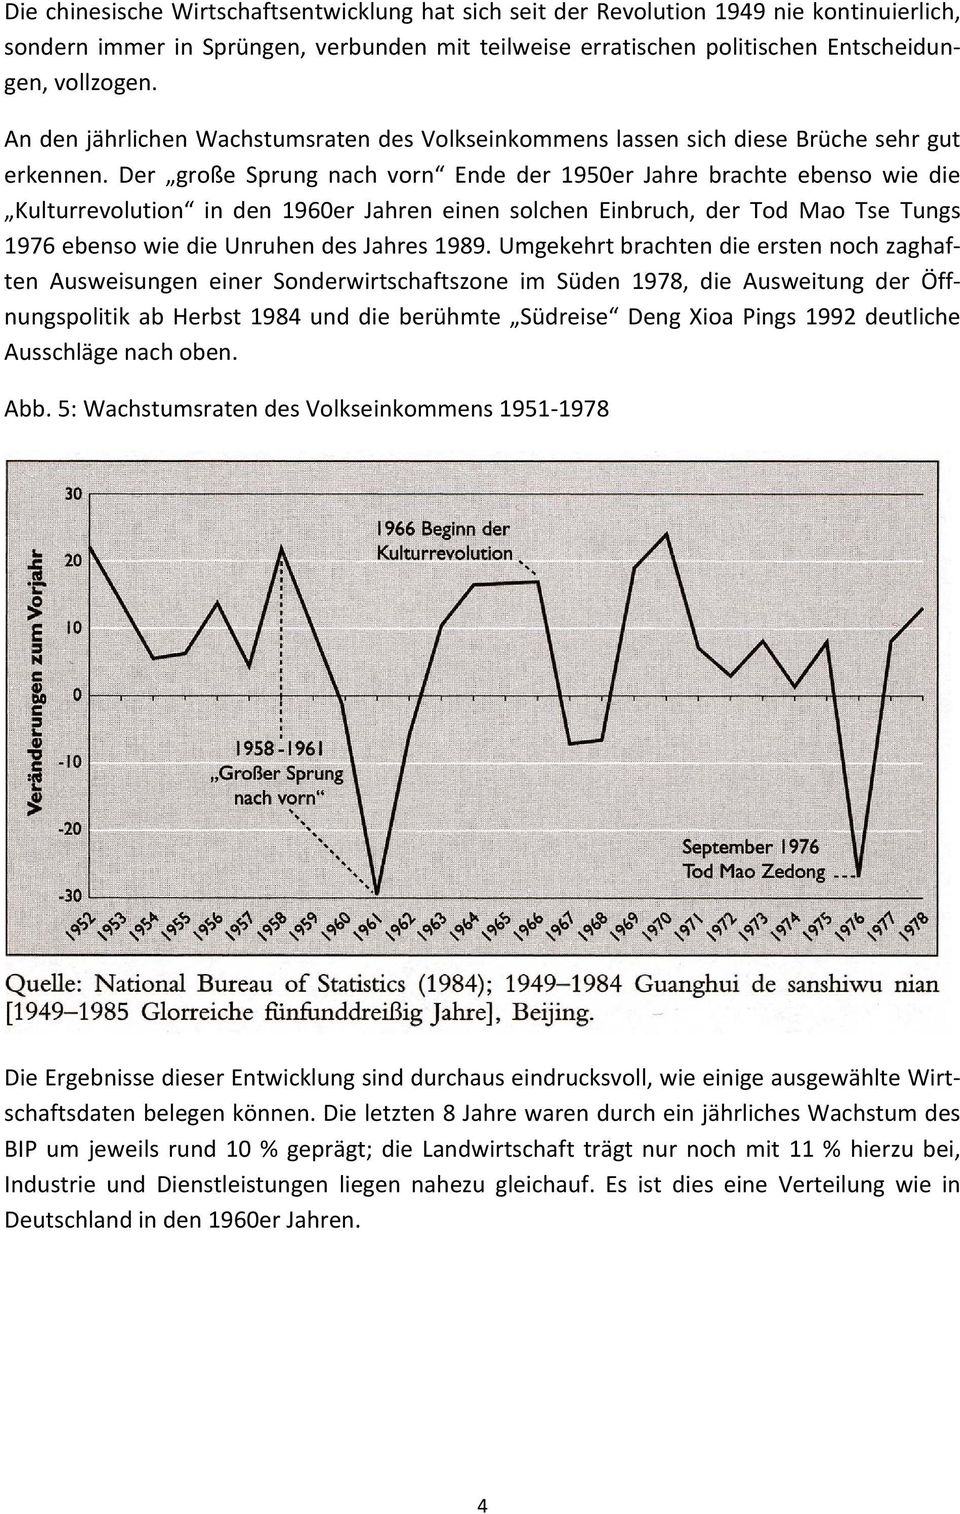 Der große Sprung nach vorn Ende der 1950er Jahre brachte ebenso wie die Kulturrevolution in den 1960er Jahren einen solchen Einbruch, der Tod Mao Tse Tungs 1976 ebenso wie die Unruhen des Jahres 1989.